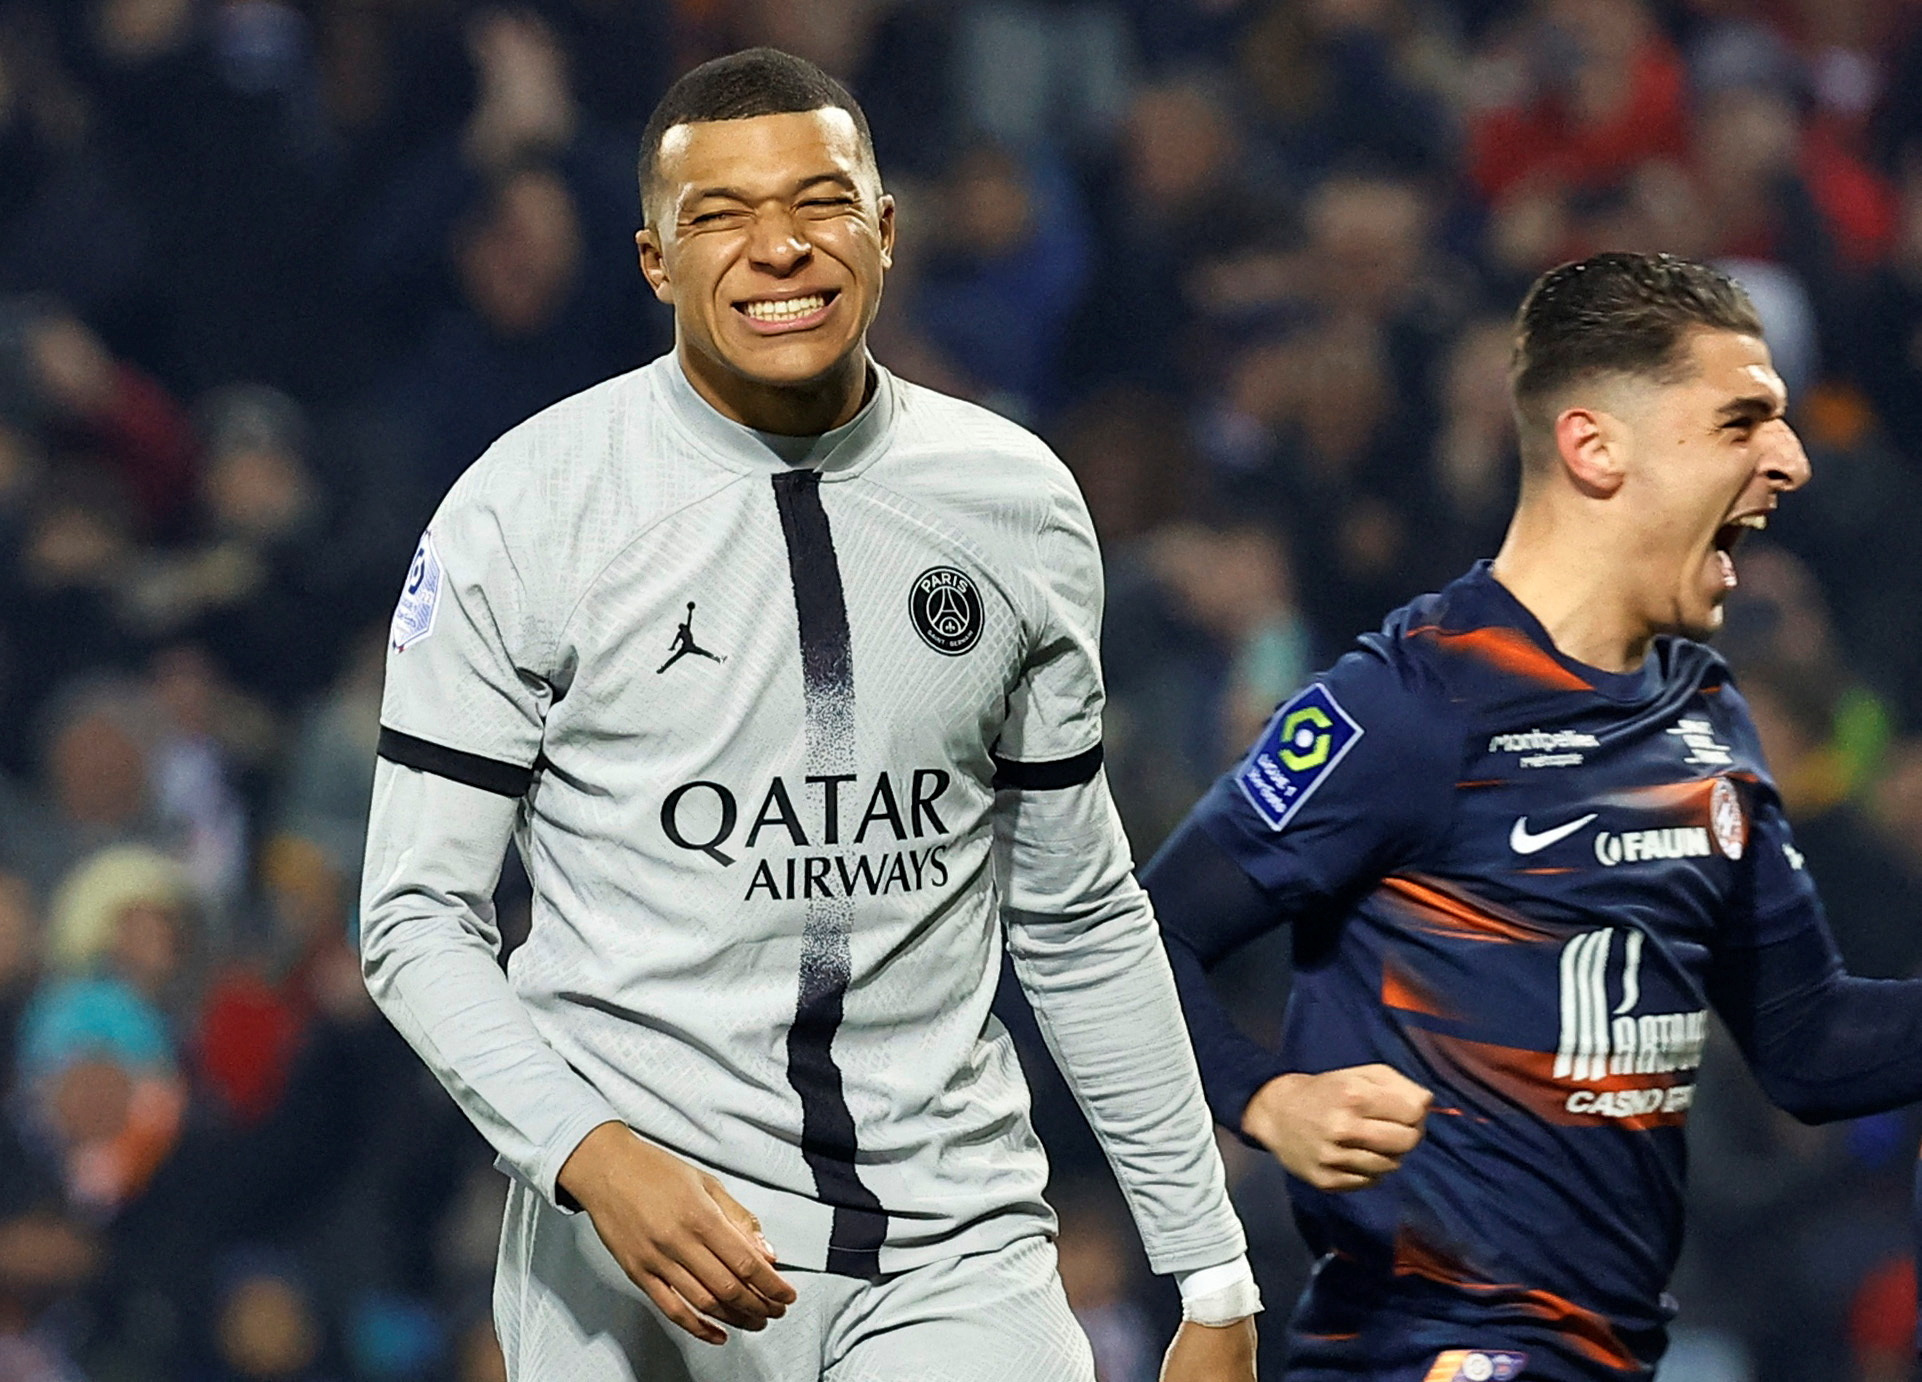 Ligue 1 - Montpellier v Paris St Germain